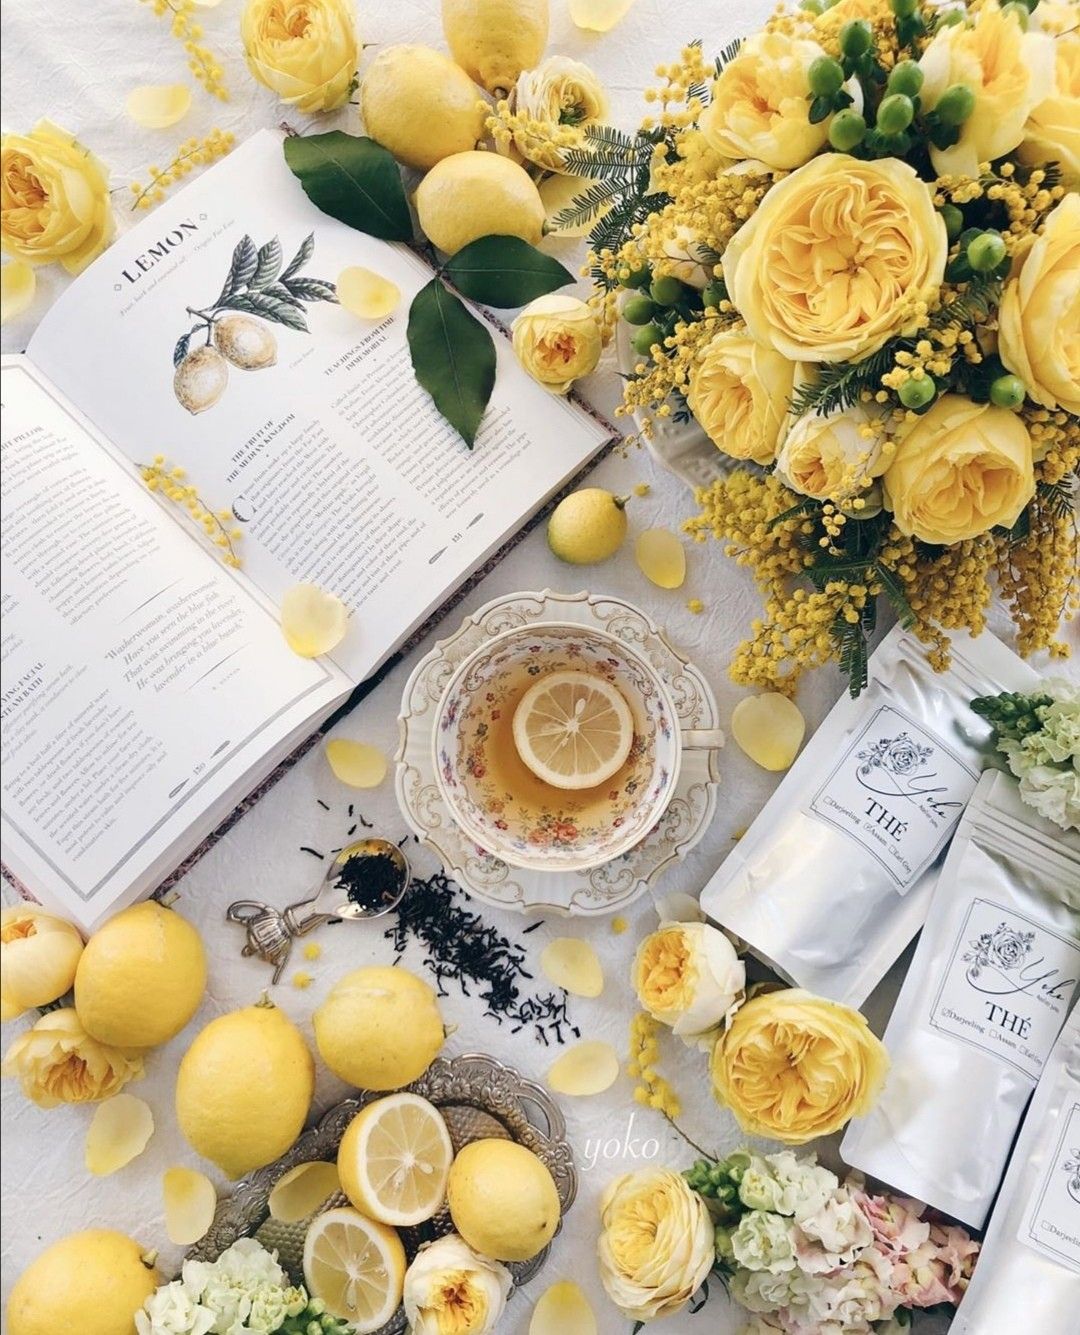 Tea _ flowers  shared by Elena Tkachenko on We Heart It.jpg